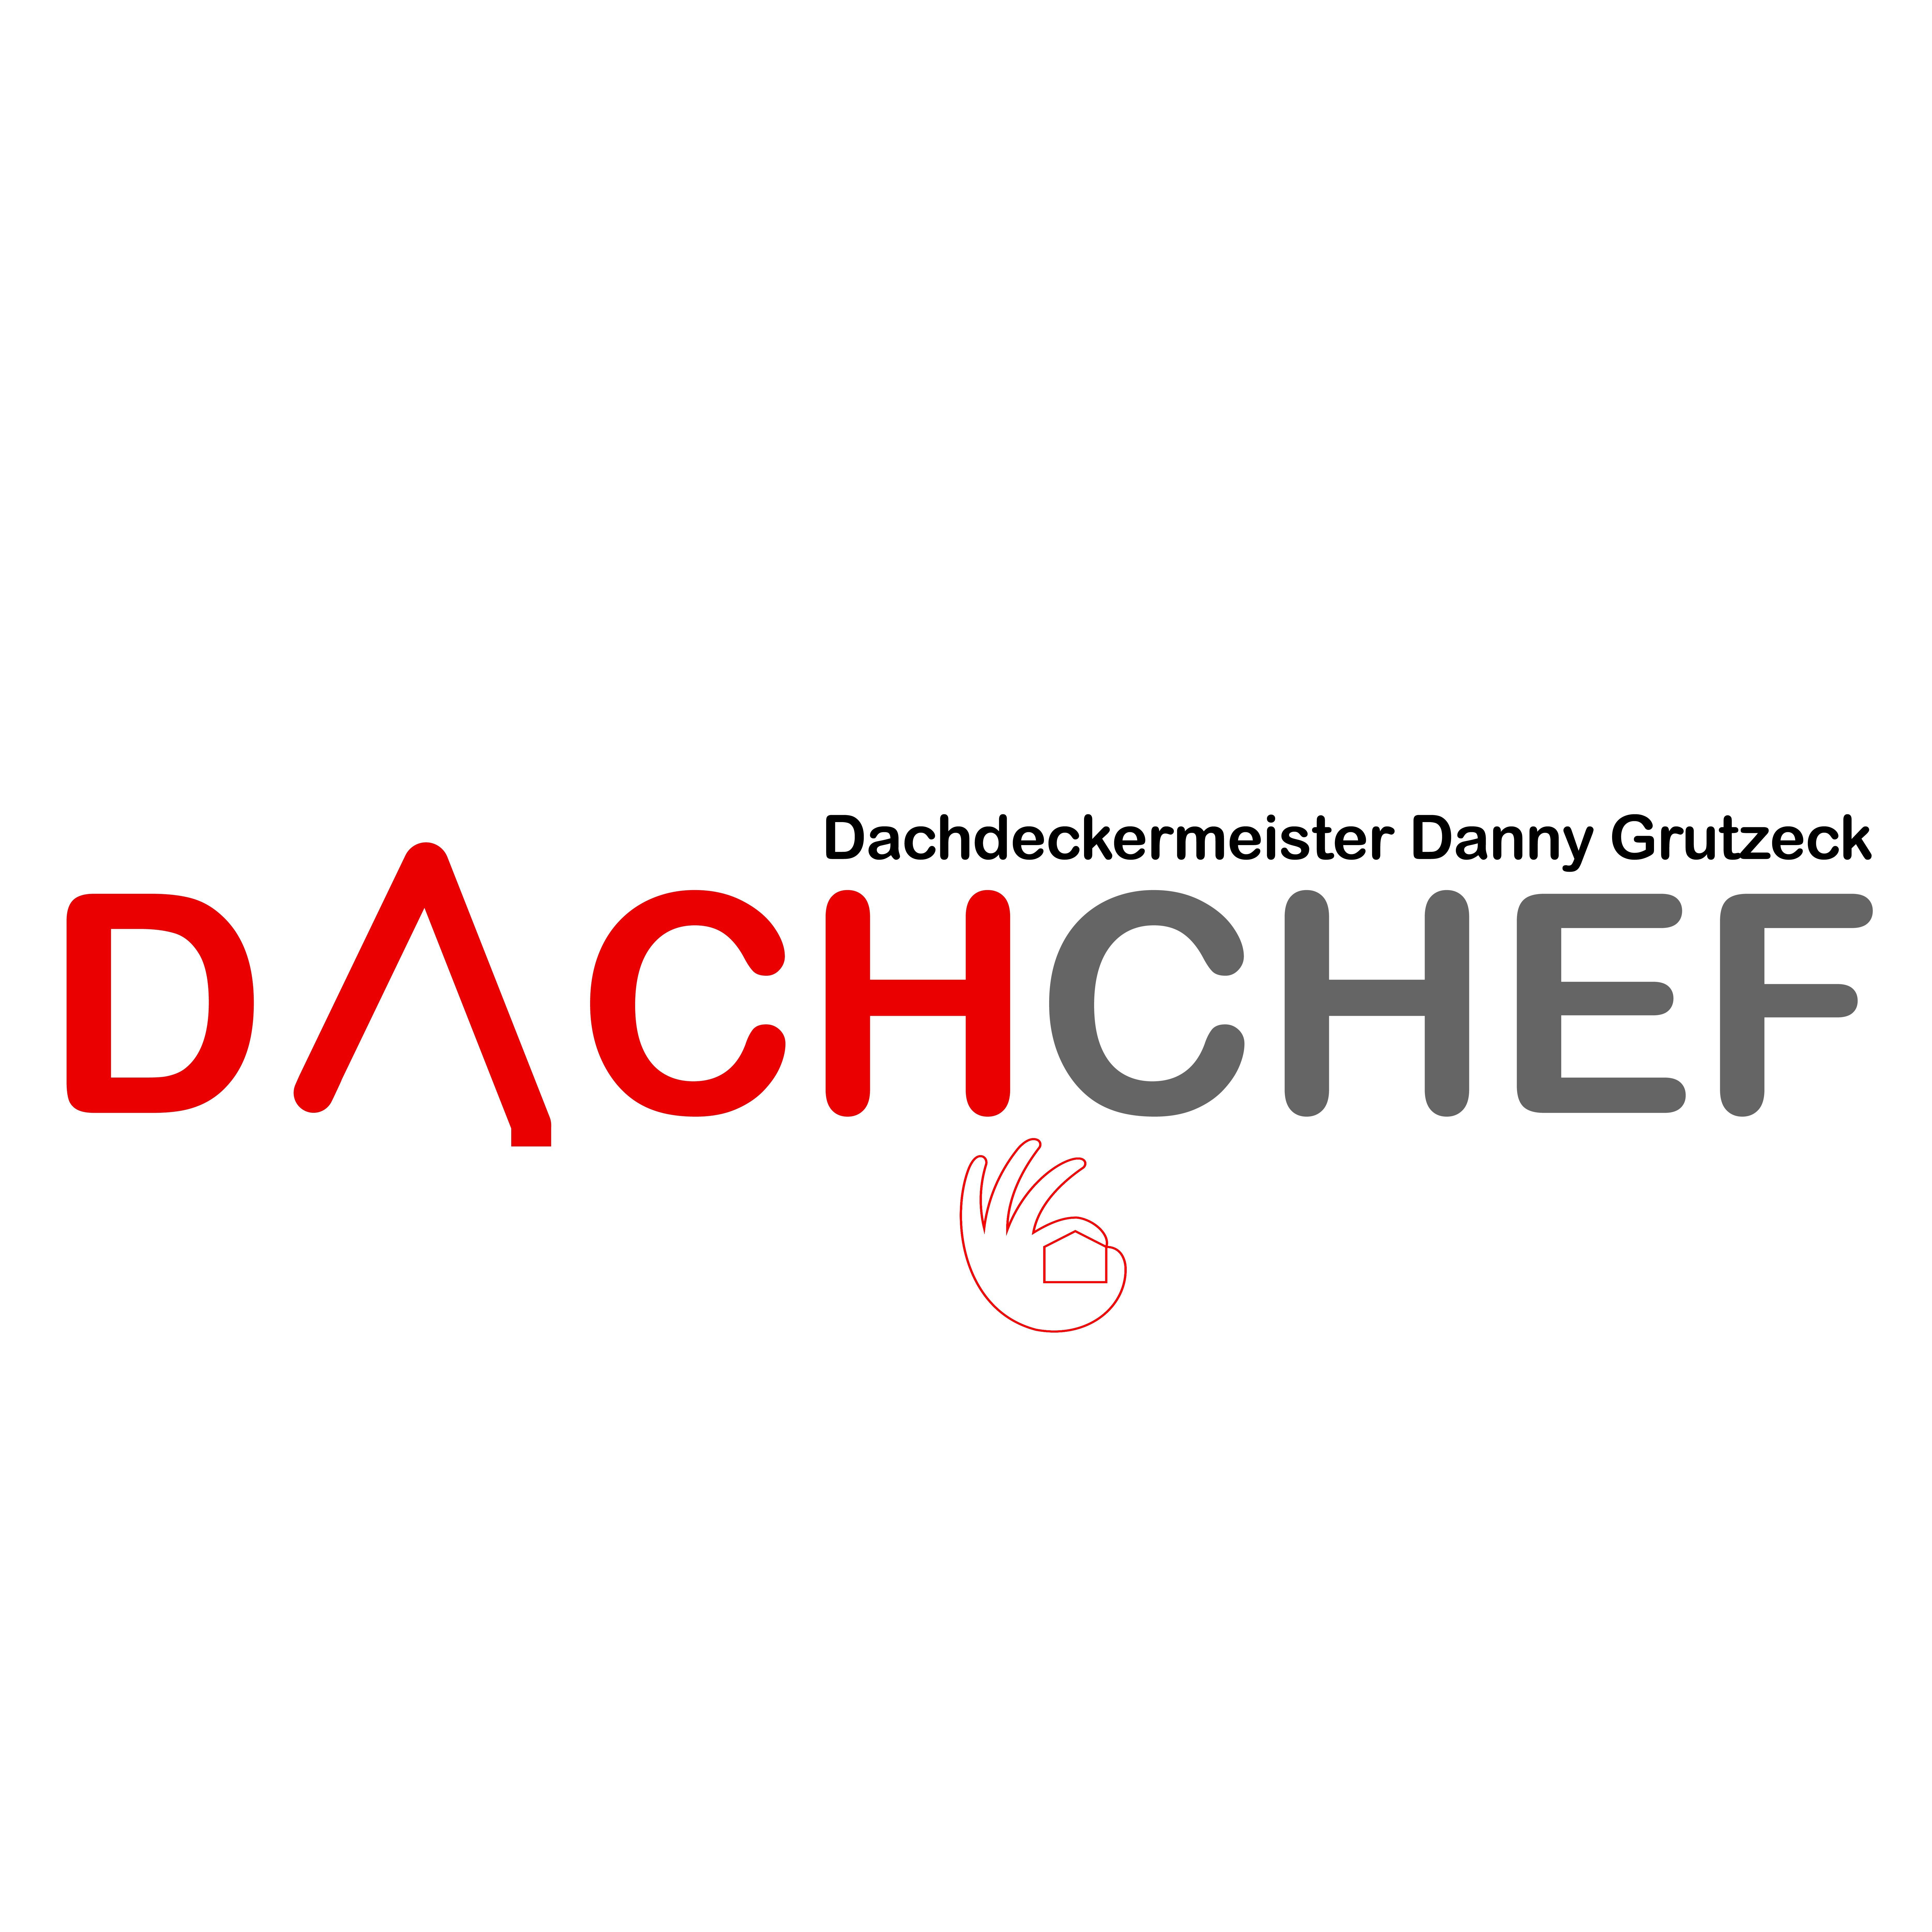 Dachchef Dachdeckermeister Danny Grutzeck in Duingen - Logo